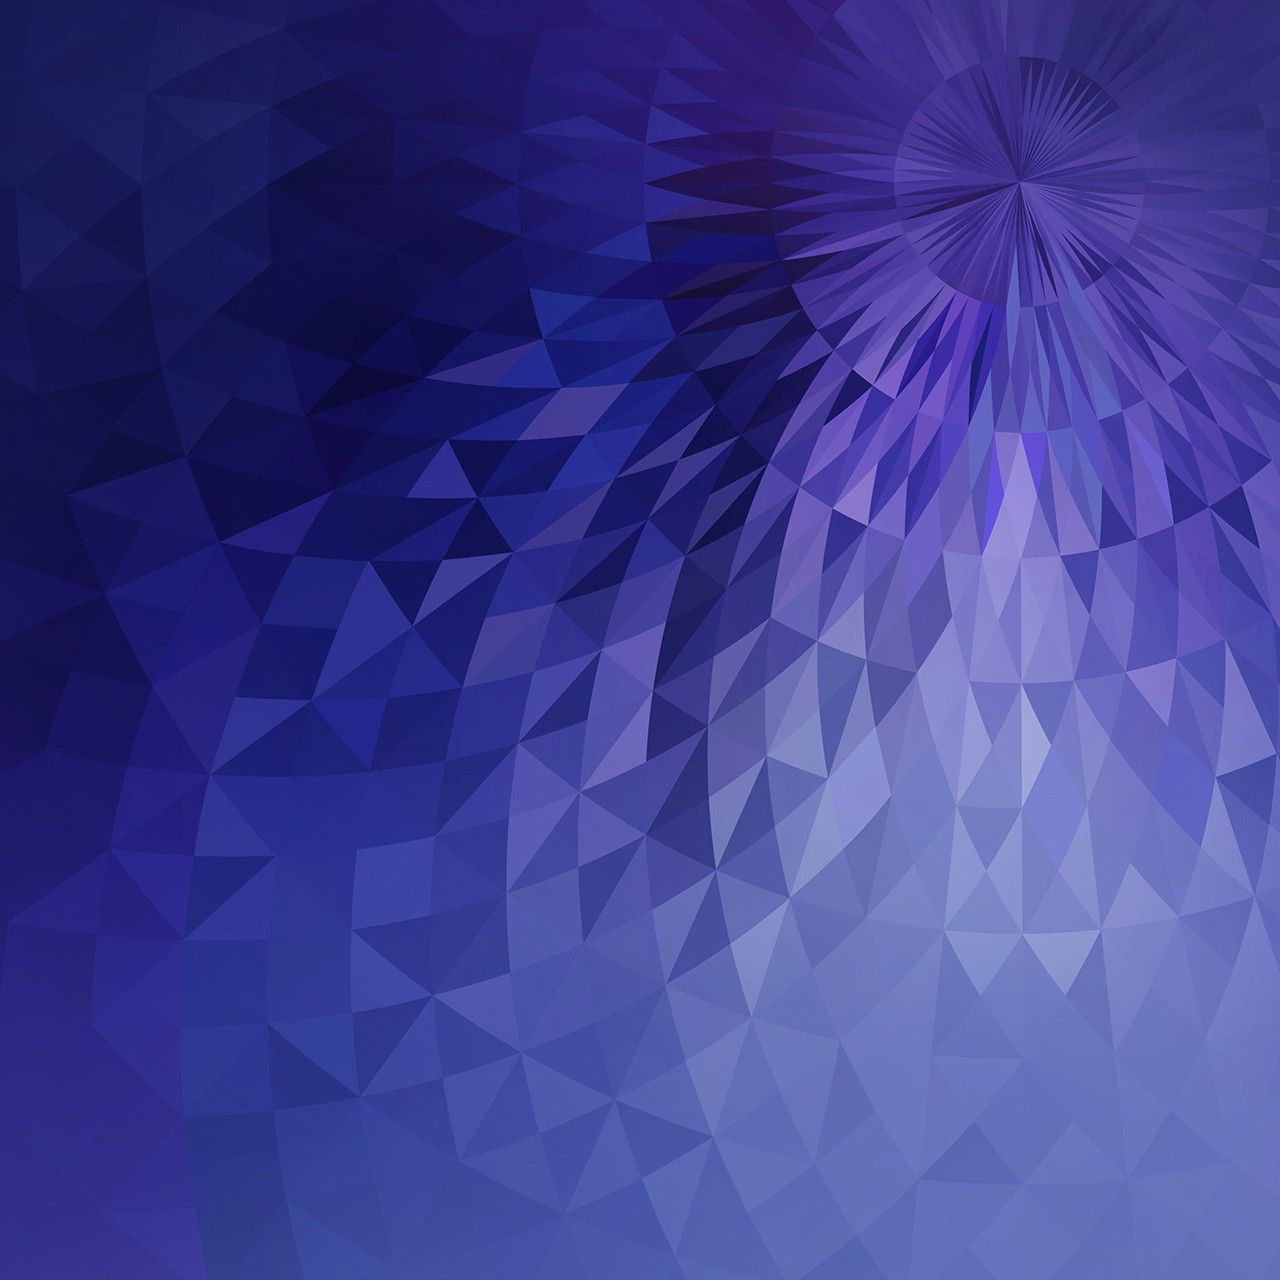 samsung galaxy j7 fondo de pantalla,azul,violeta,púrpura,modelo,azul eléctrico